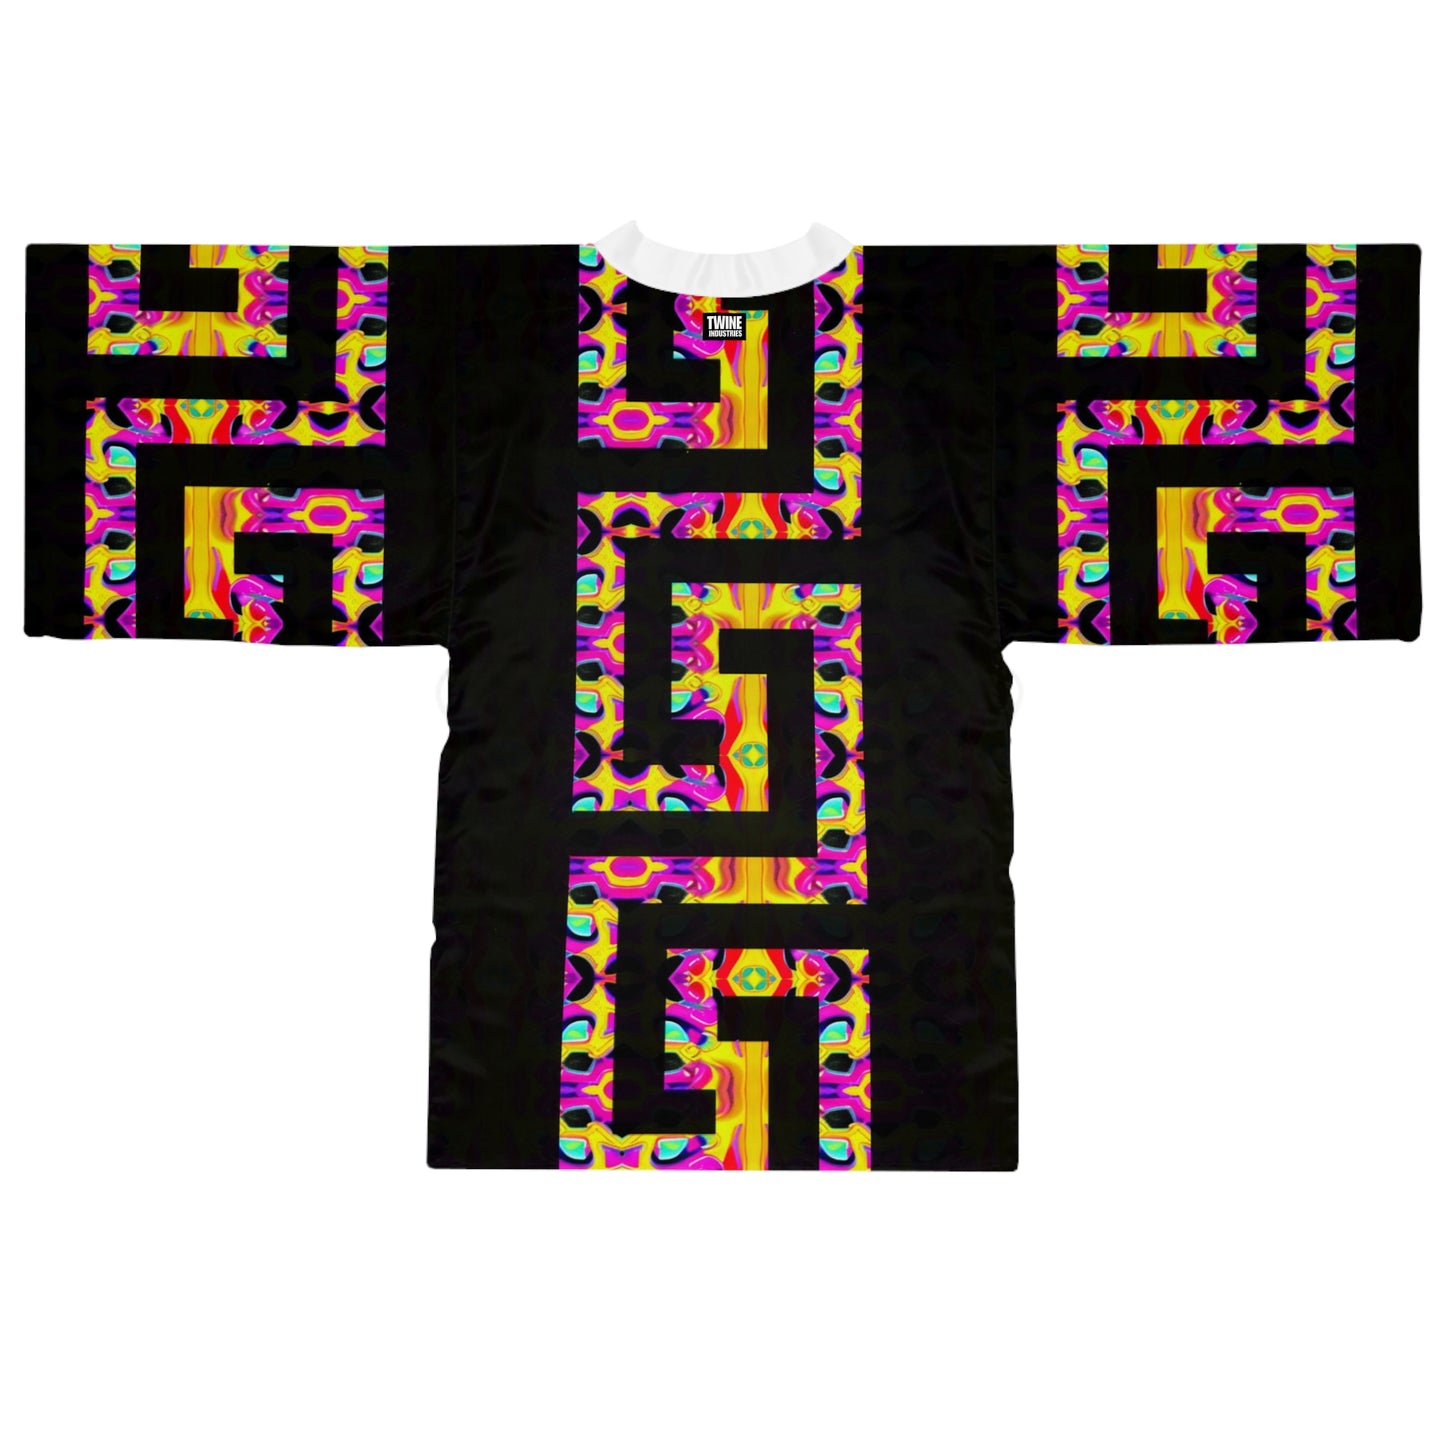 Key 2 Kimono